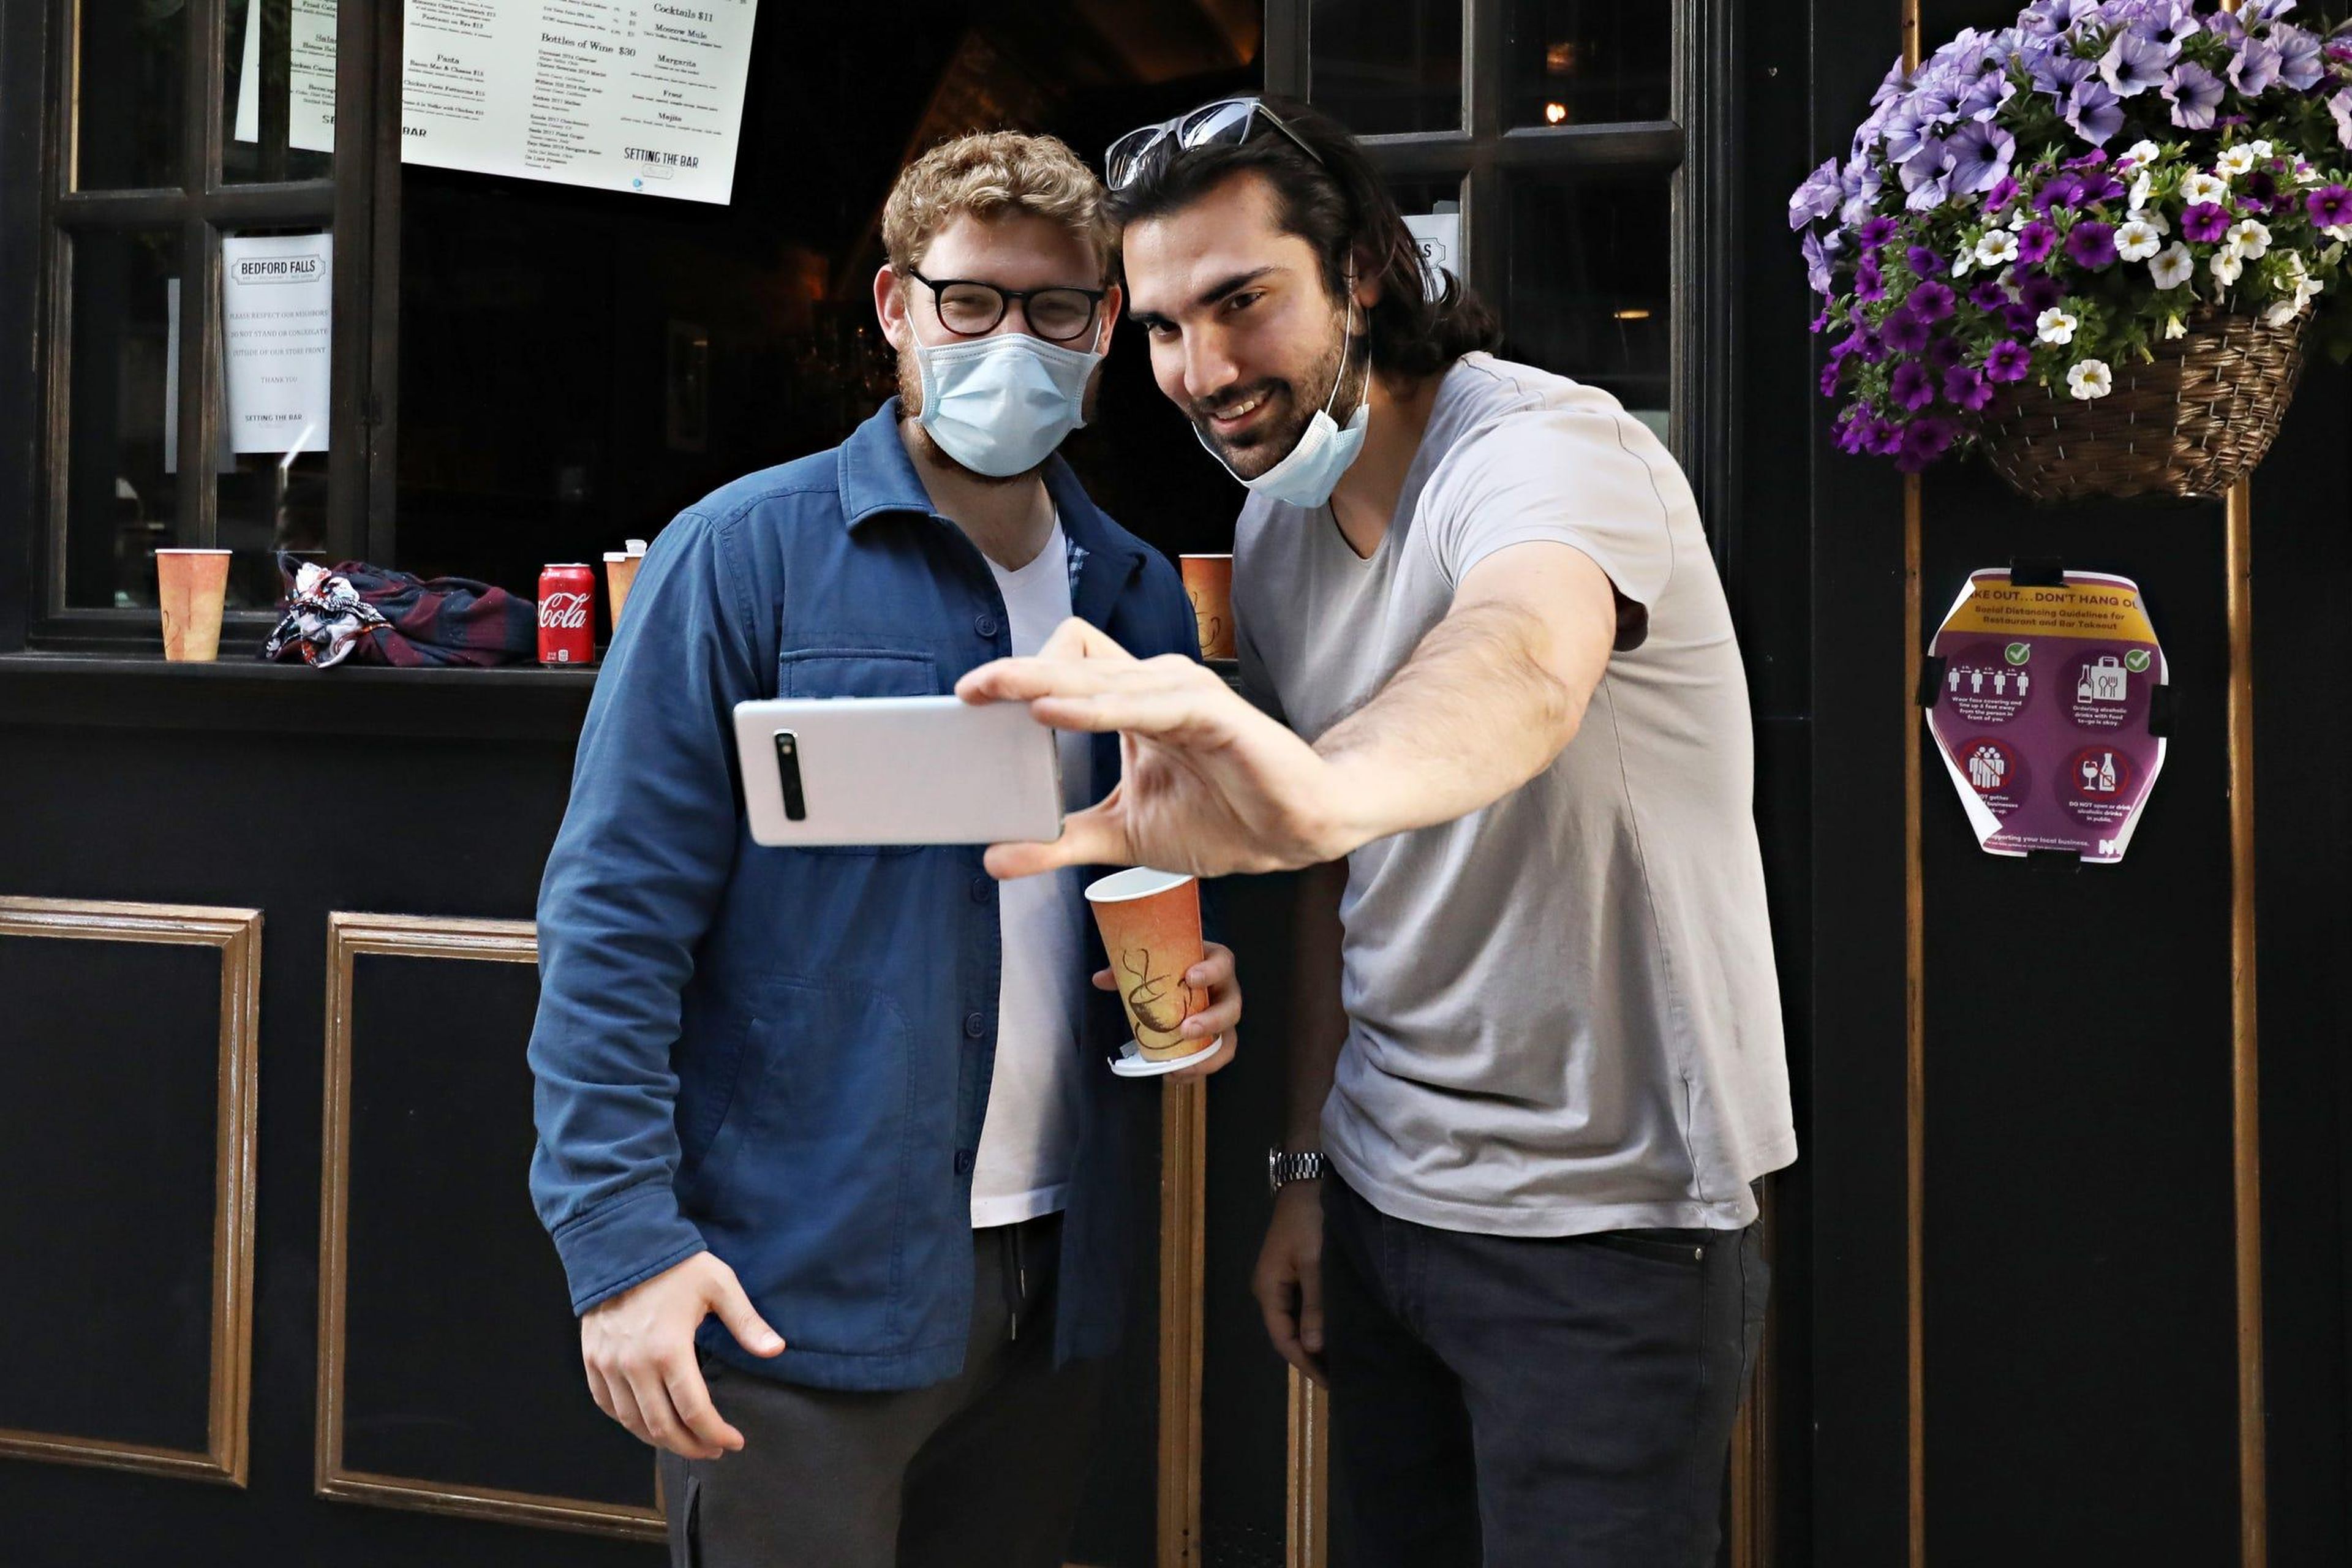 Personas que llevan mascarillas posan para un selfie durante la pandemia de coronavirus el 27 de mayo de 2020 en la ciudad de Nueva York.